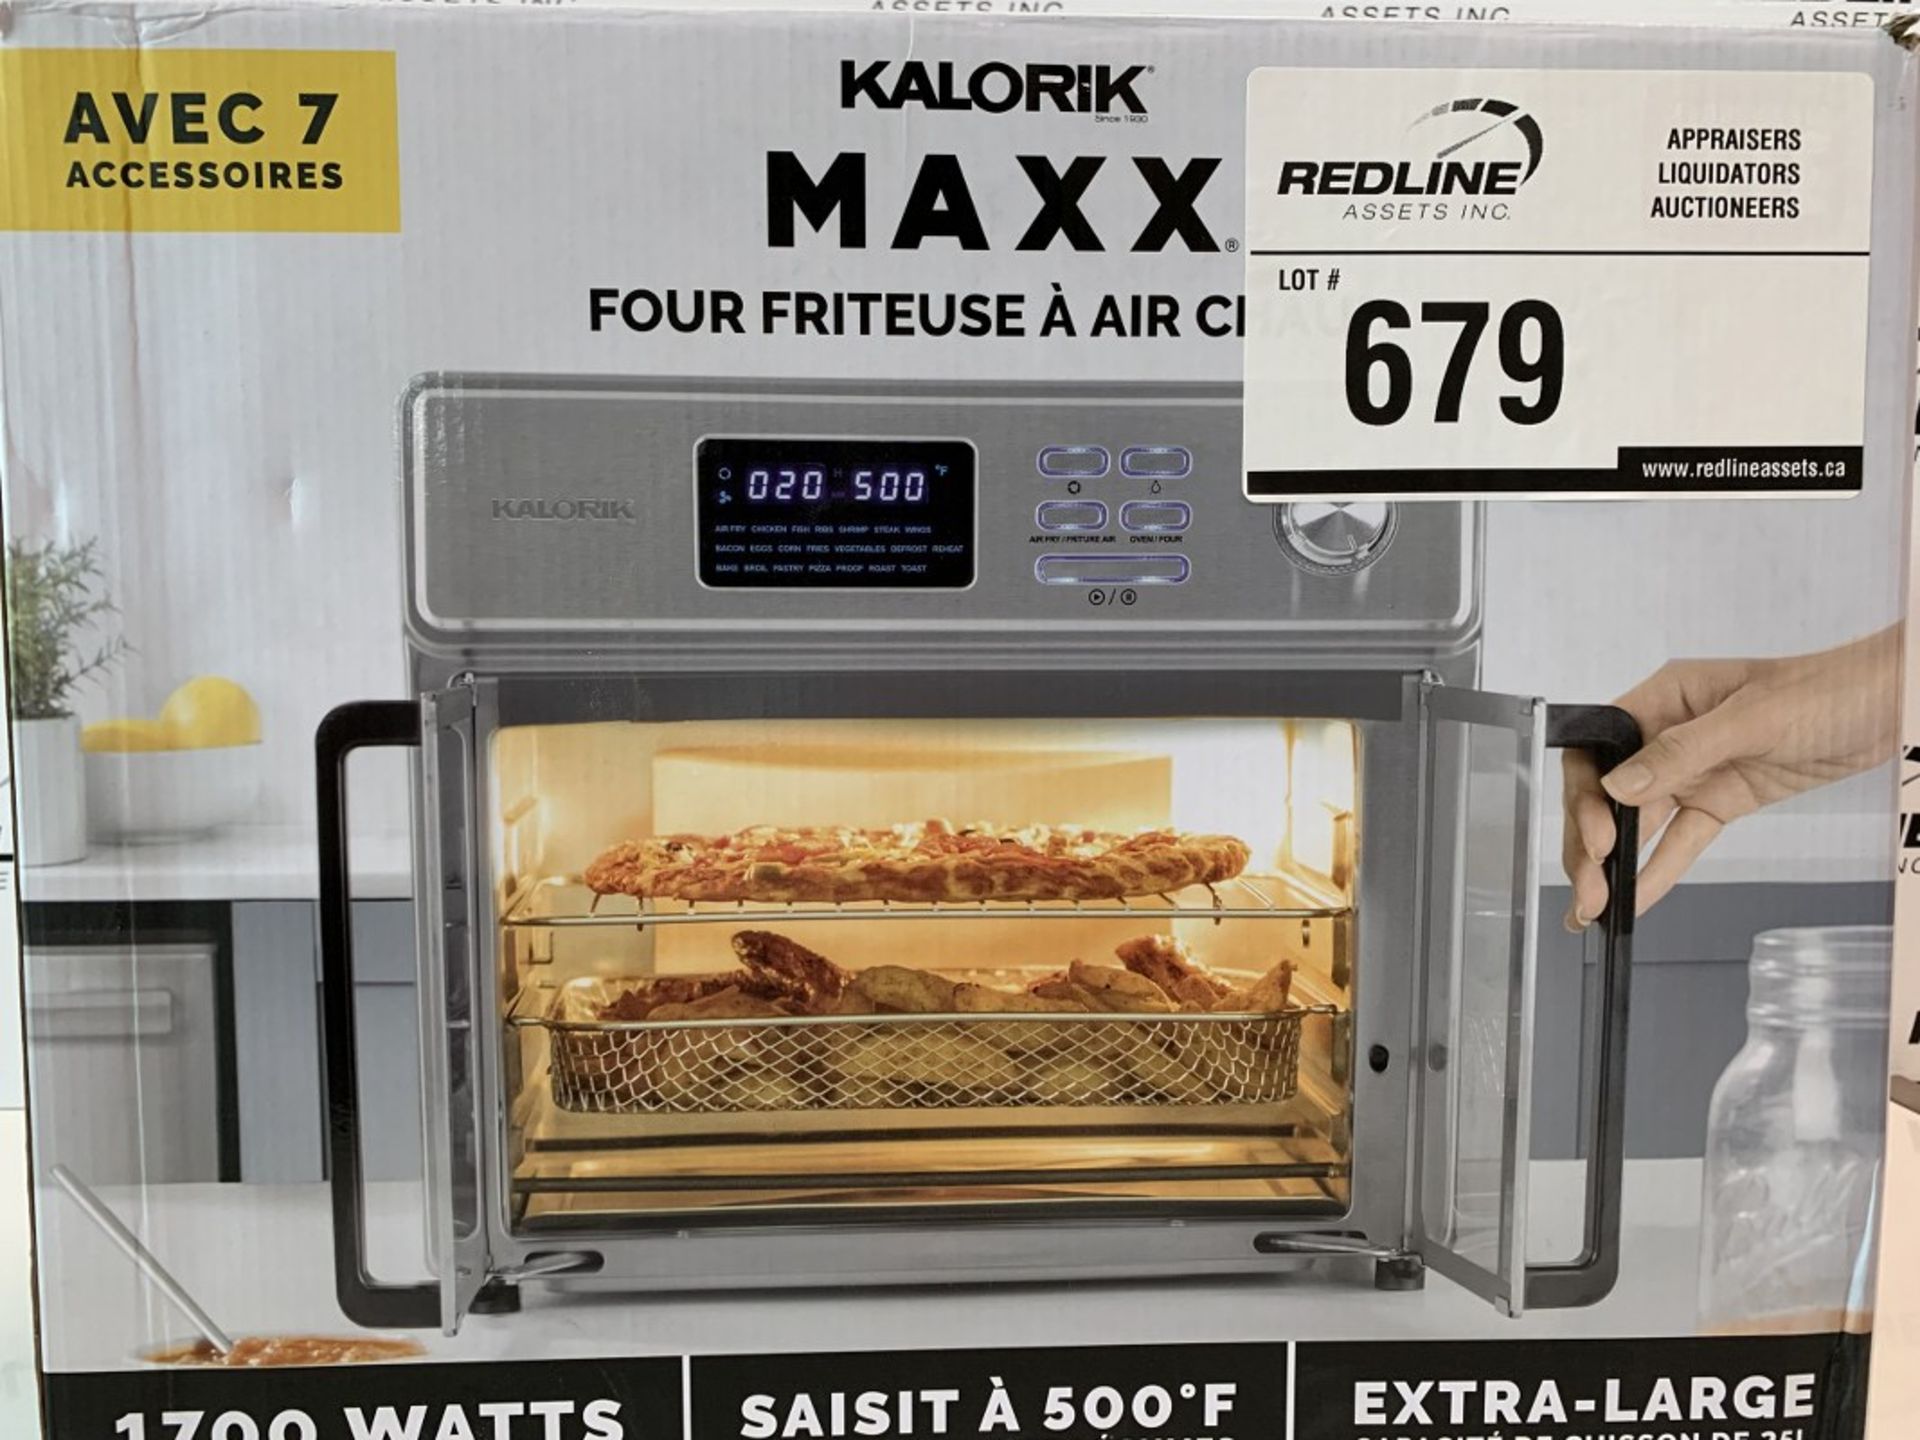 Kalorik - Maxx - 26Qt Air Fryer Oven - Image 2 of 3